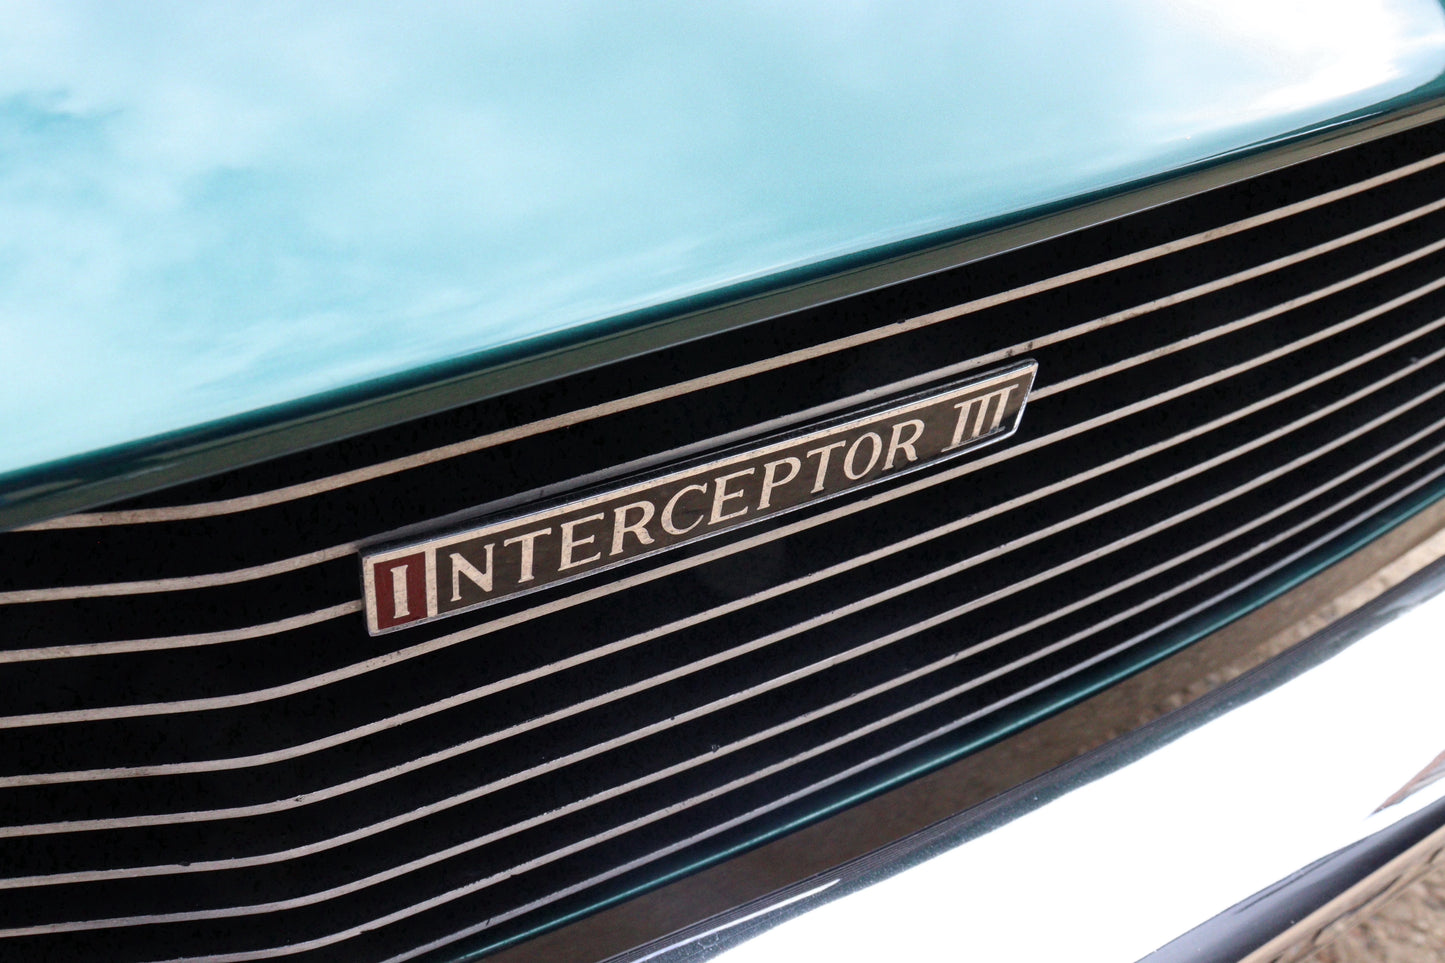 1973 Jensen Interceptor III - 7.2 litre V8